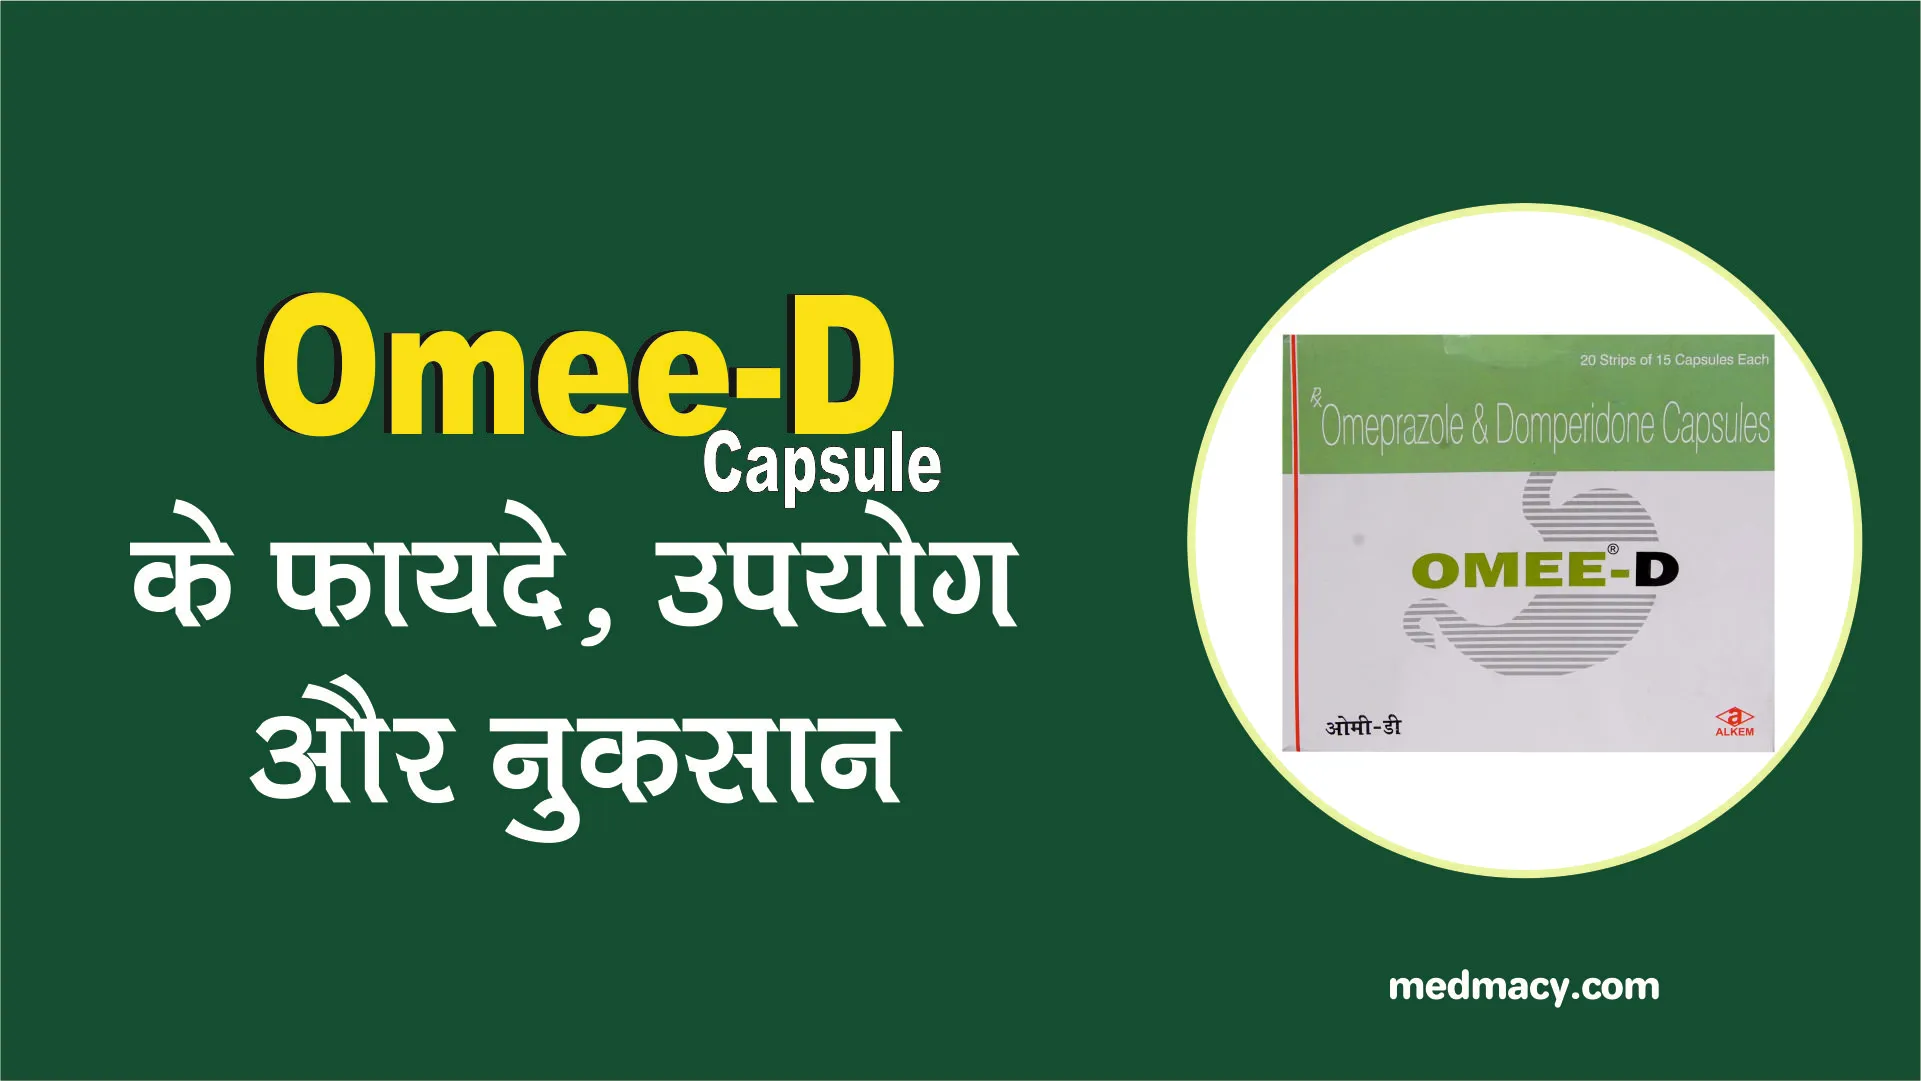 Omee-D Capsule uses in Hindi